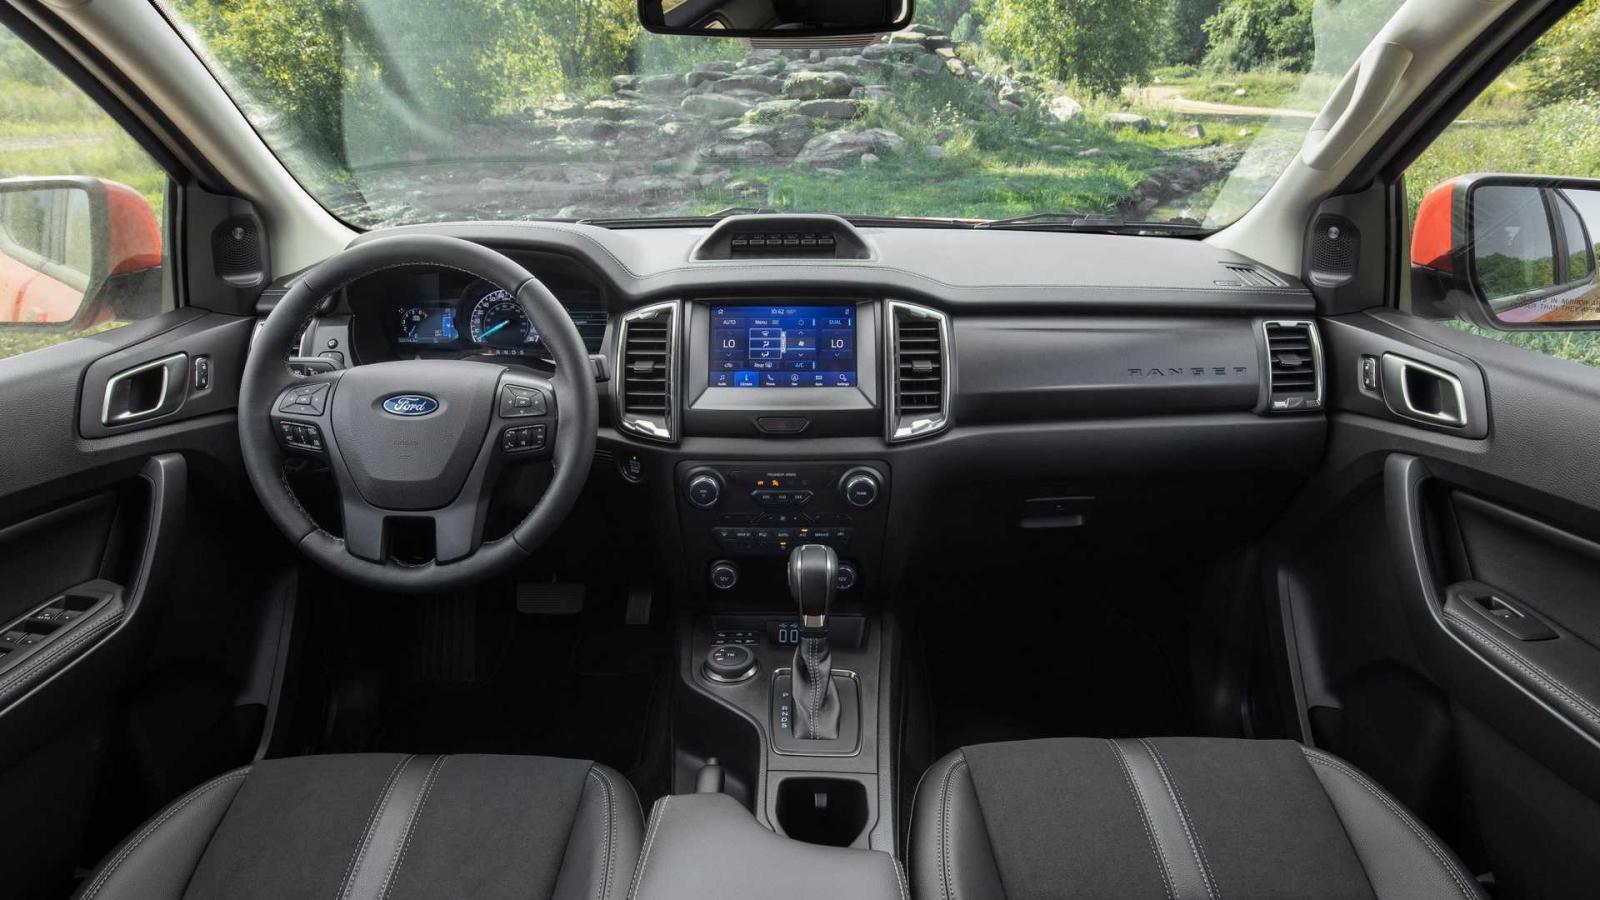 Ford Ranger Tremor 2021 nâng cao trải nghiệm lái, vượt địa hình 1 cách êm ái.